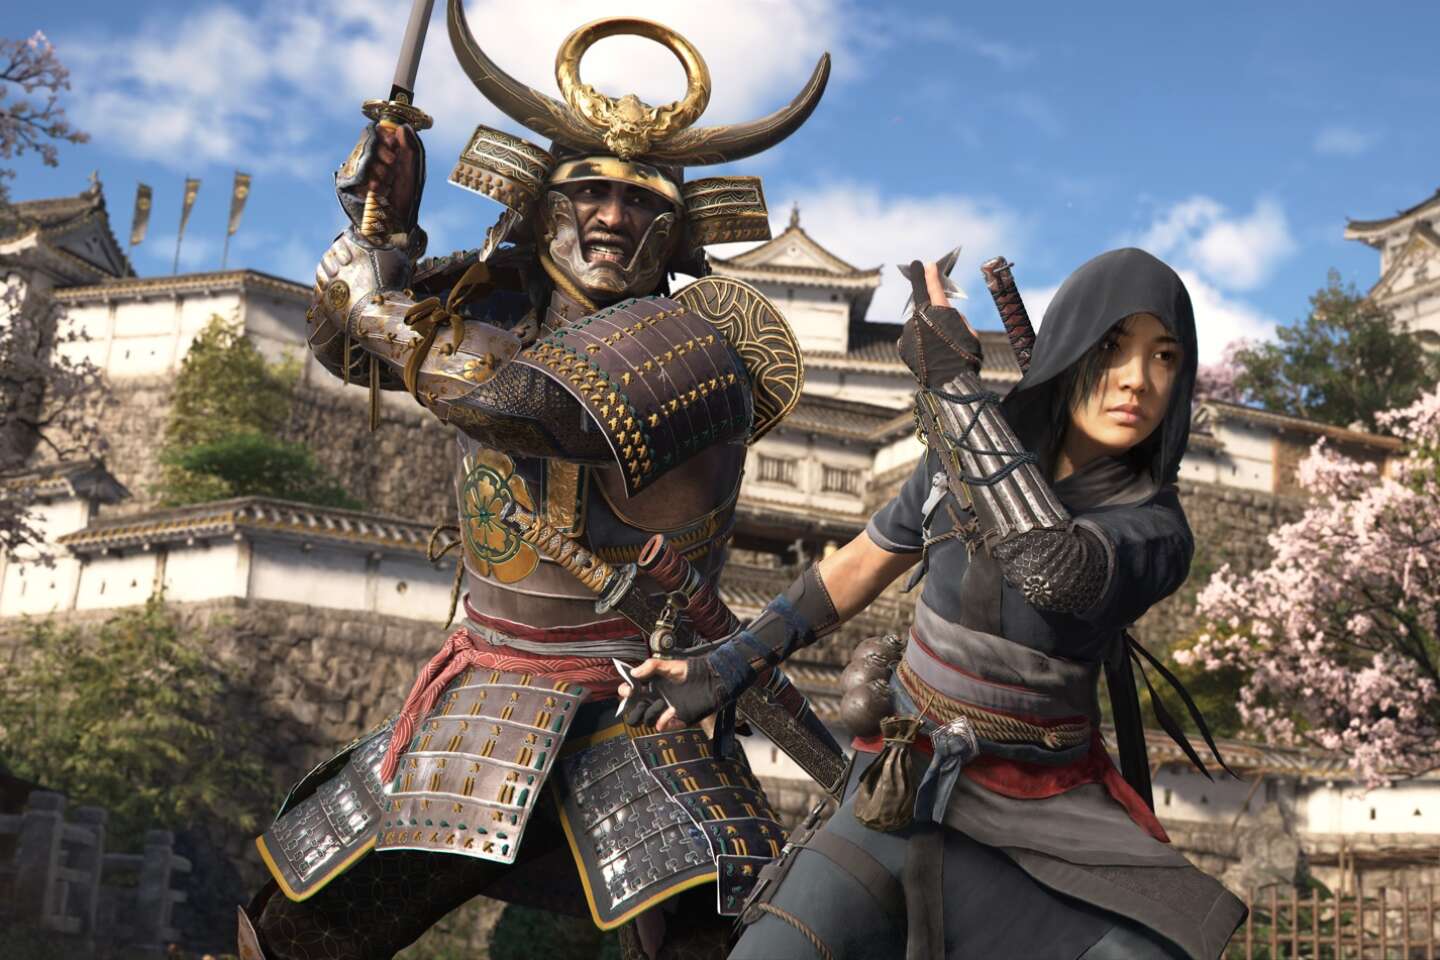 Regarder la vidéo « Assassin’s Creed Shadows » : Ubisoft mise sur Yasuke, premier samouraï noir du Japon, pour son nouvel opus